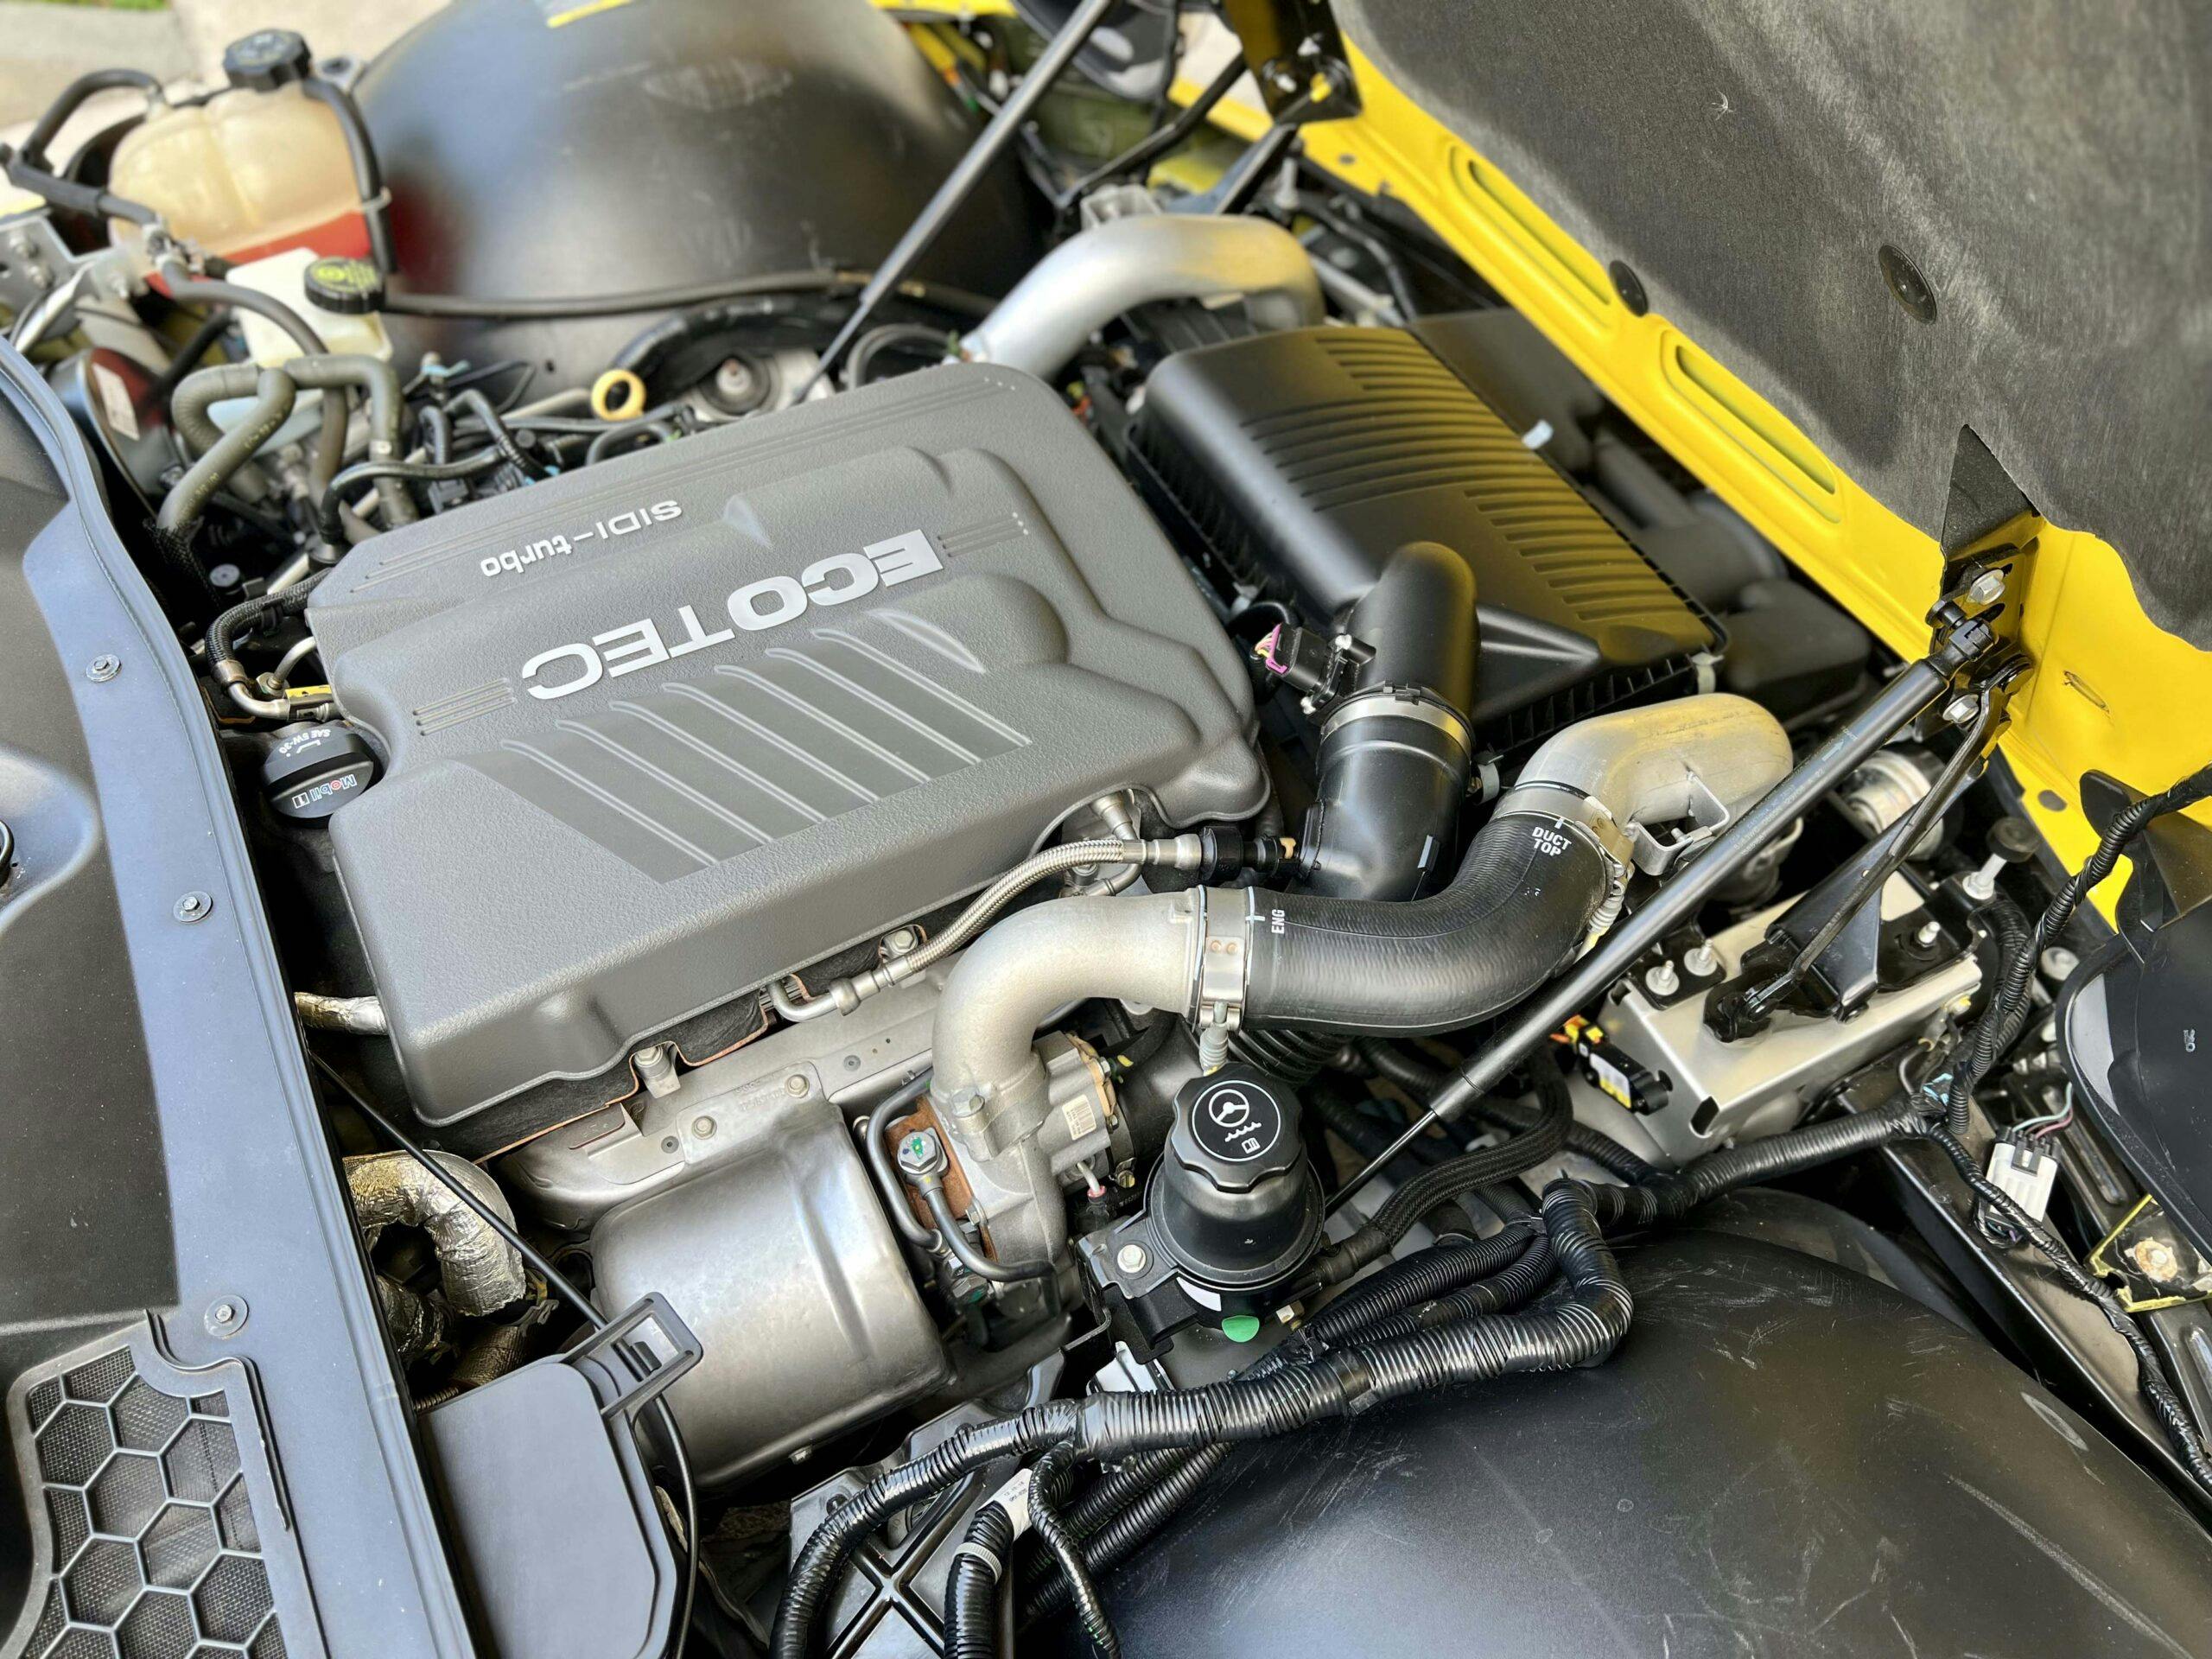 2008 Pontiac Solstice GXP SCCA T2 Champion Edition engine